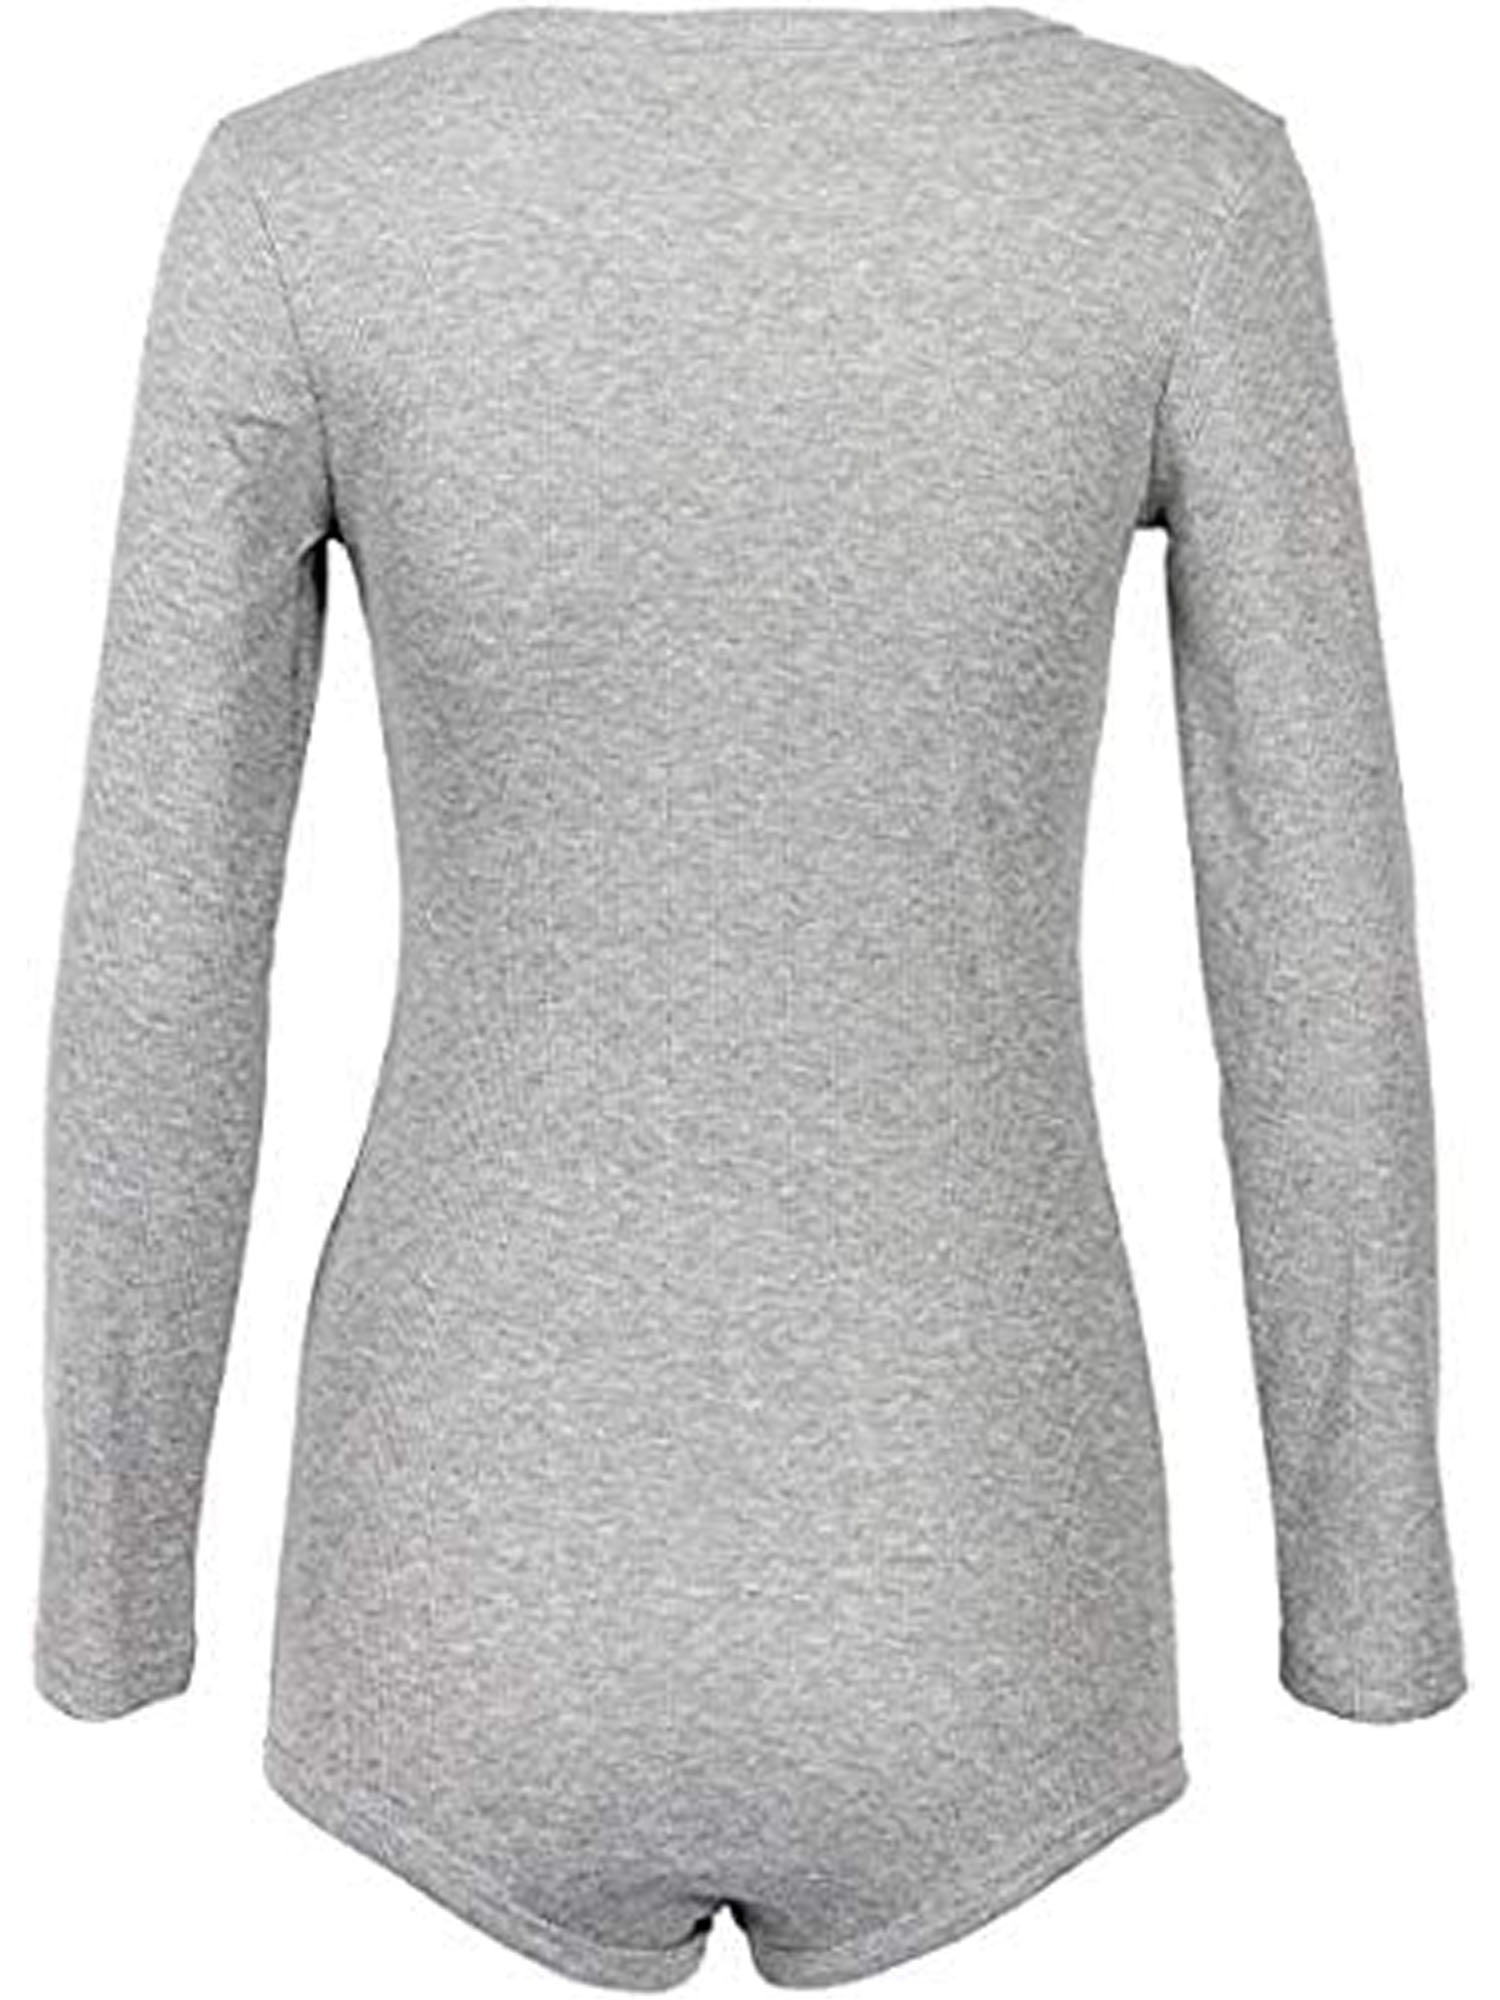 HAXMNOU Long Sleeve Deep V Neck Bodysuit Breathable Cotton Stretch Grey XL